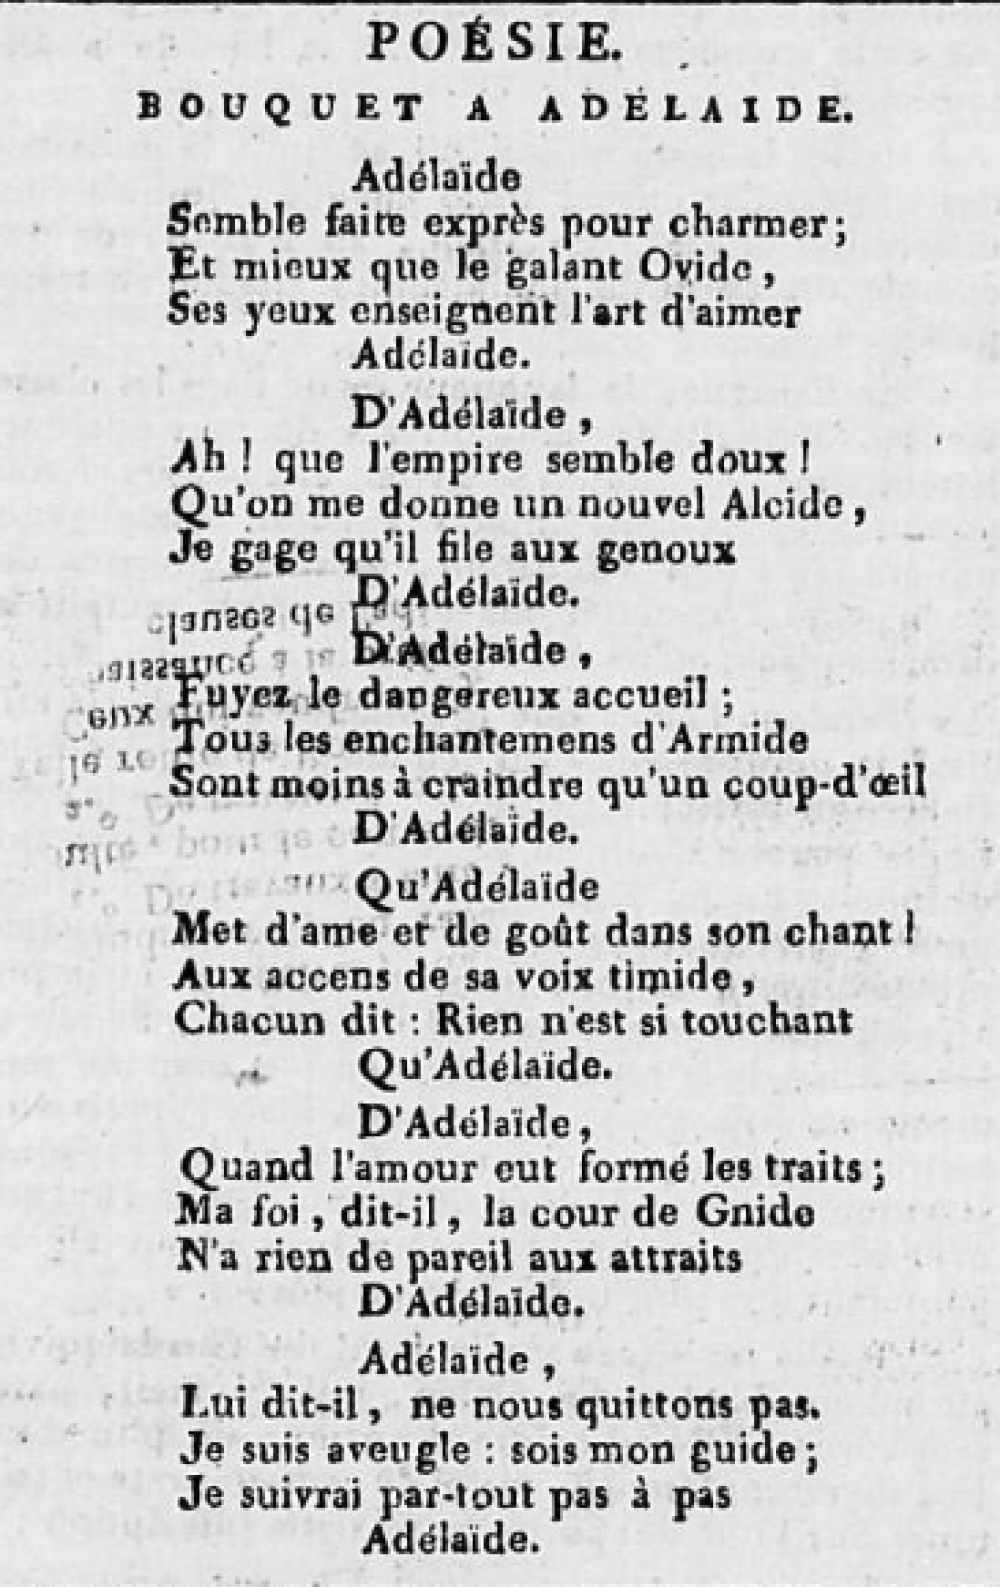 &nbsp;"Bouquet à Adélaïde" in Journal administratif, judiciaire, littéraire du Département de la Drôme, Poésie, mercredi 11 octobre 1809, Valence : Marc Aurel imprimeur, p.4<br>